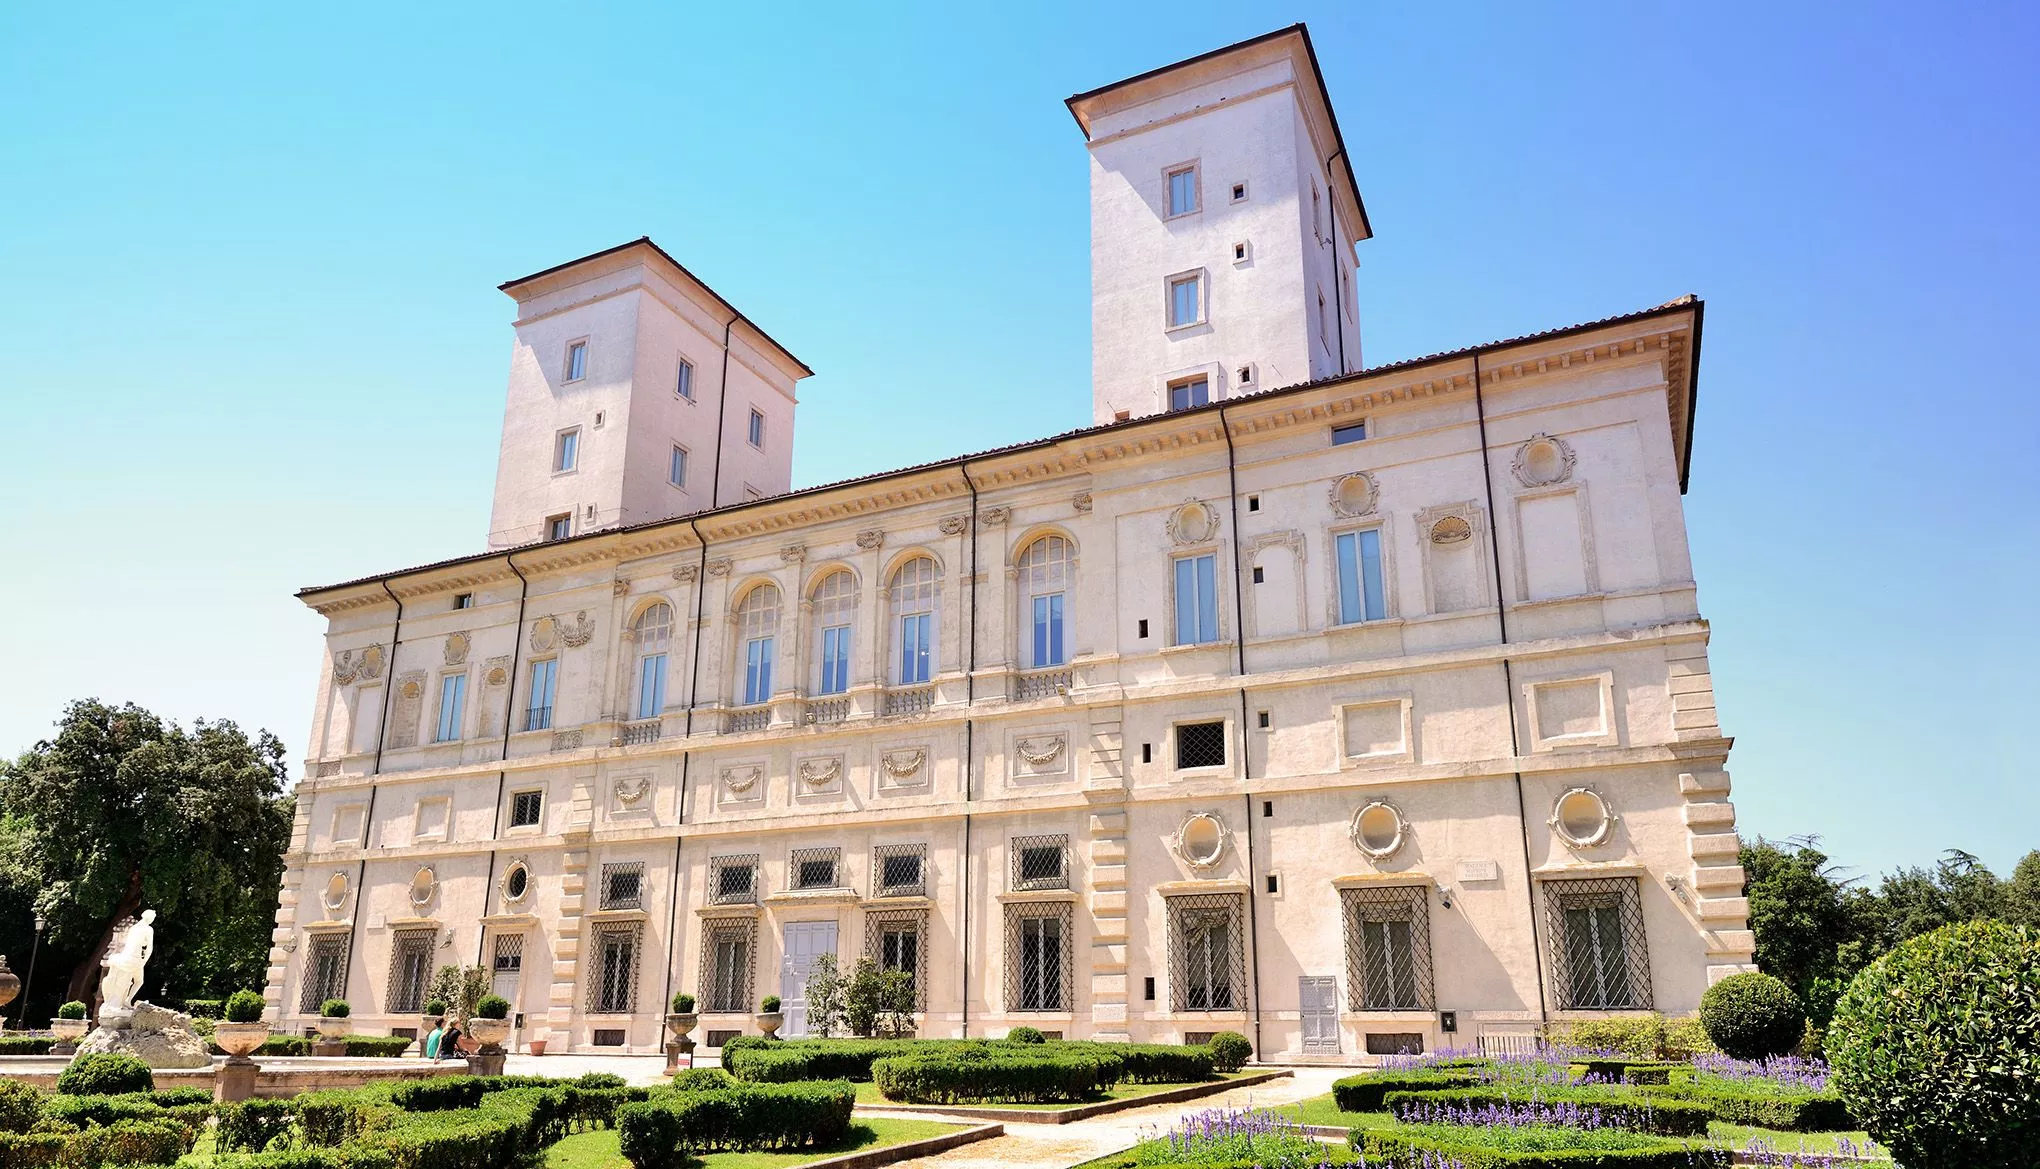 Das Casino nobile der Villa Borghese zählt zu den wertvollsten privaten Ausstellungen der Welt